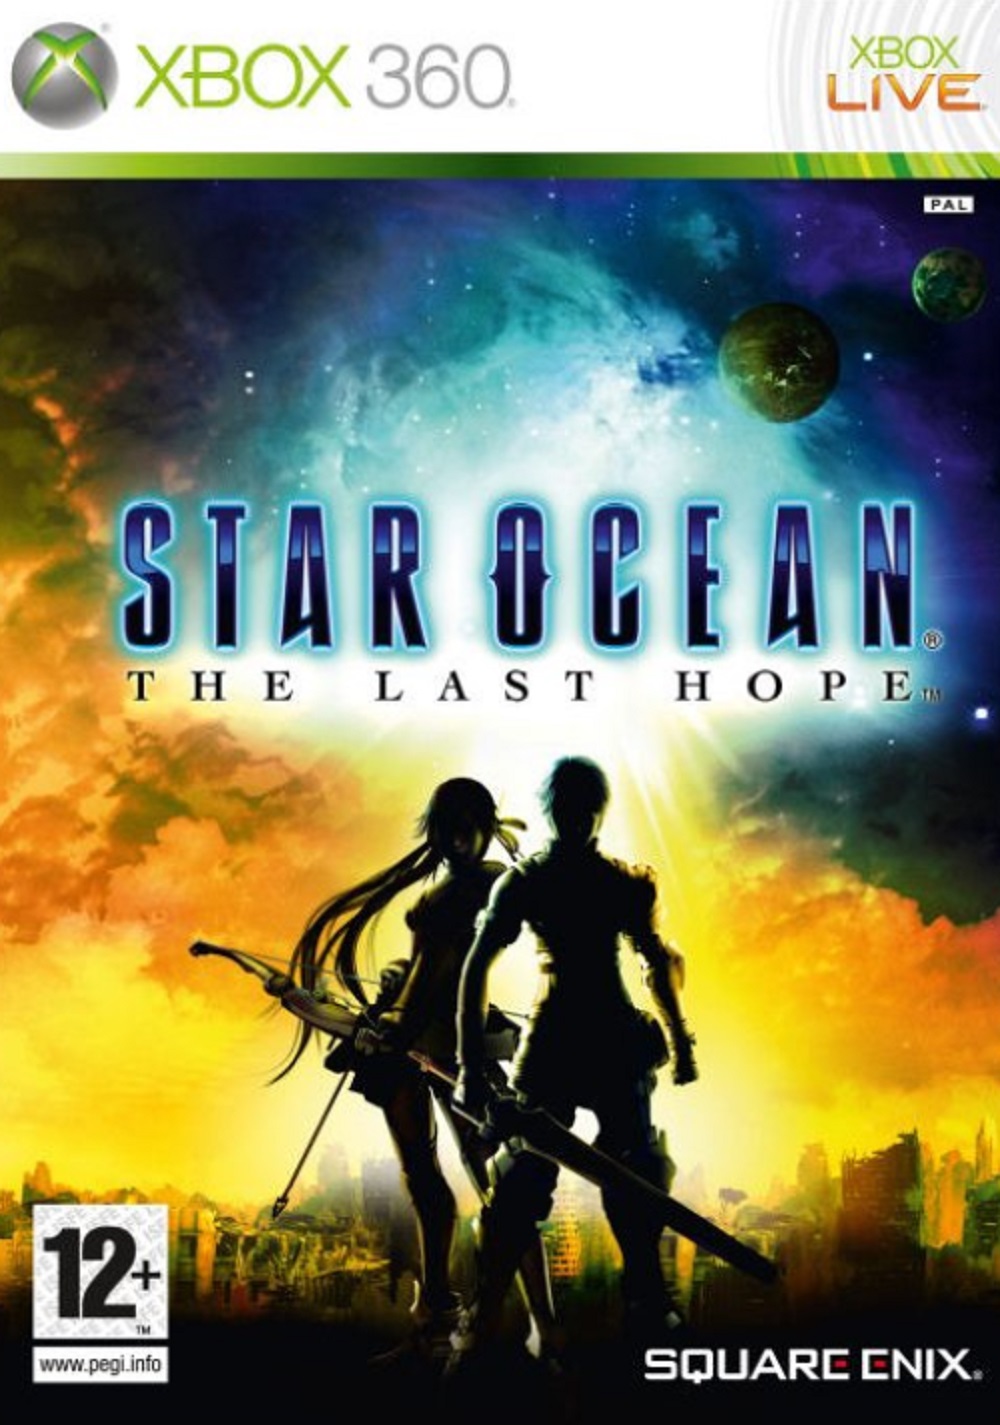 STAR OCEAN - THE LAST HOPE (XBOX 360 - BAZAR)